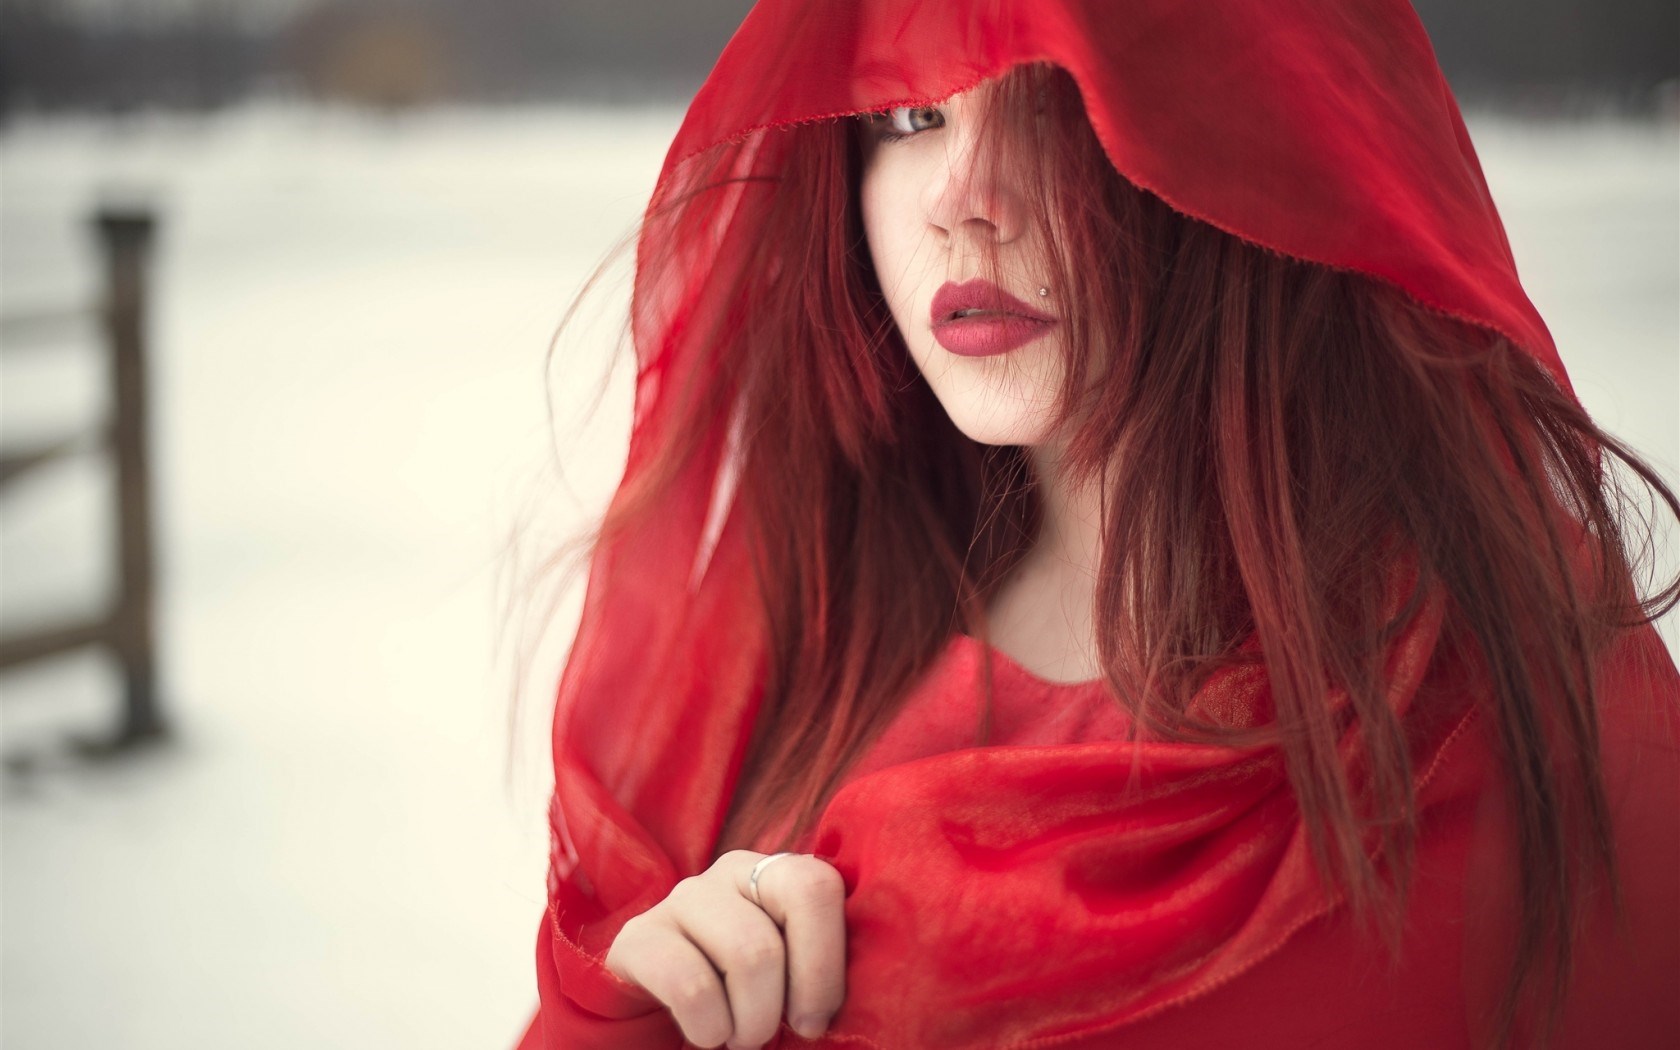 redhead-red-lips-fashion-wallpaper-1680x1050.jpg